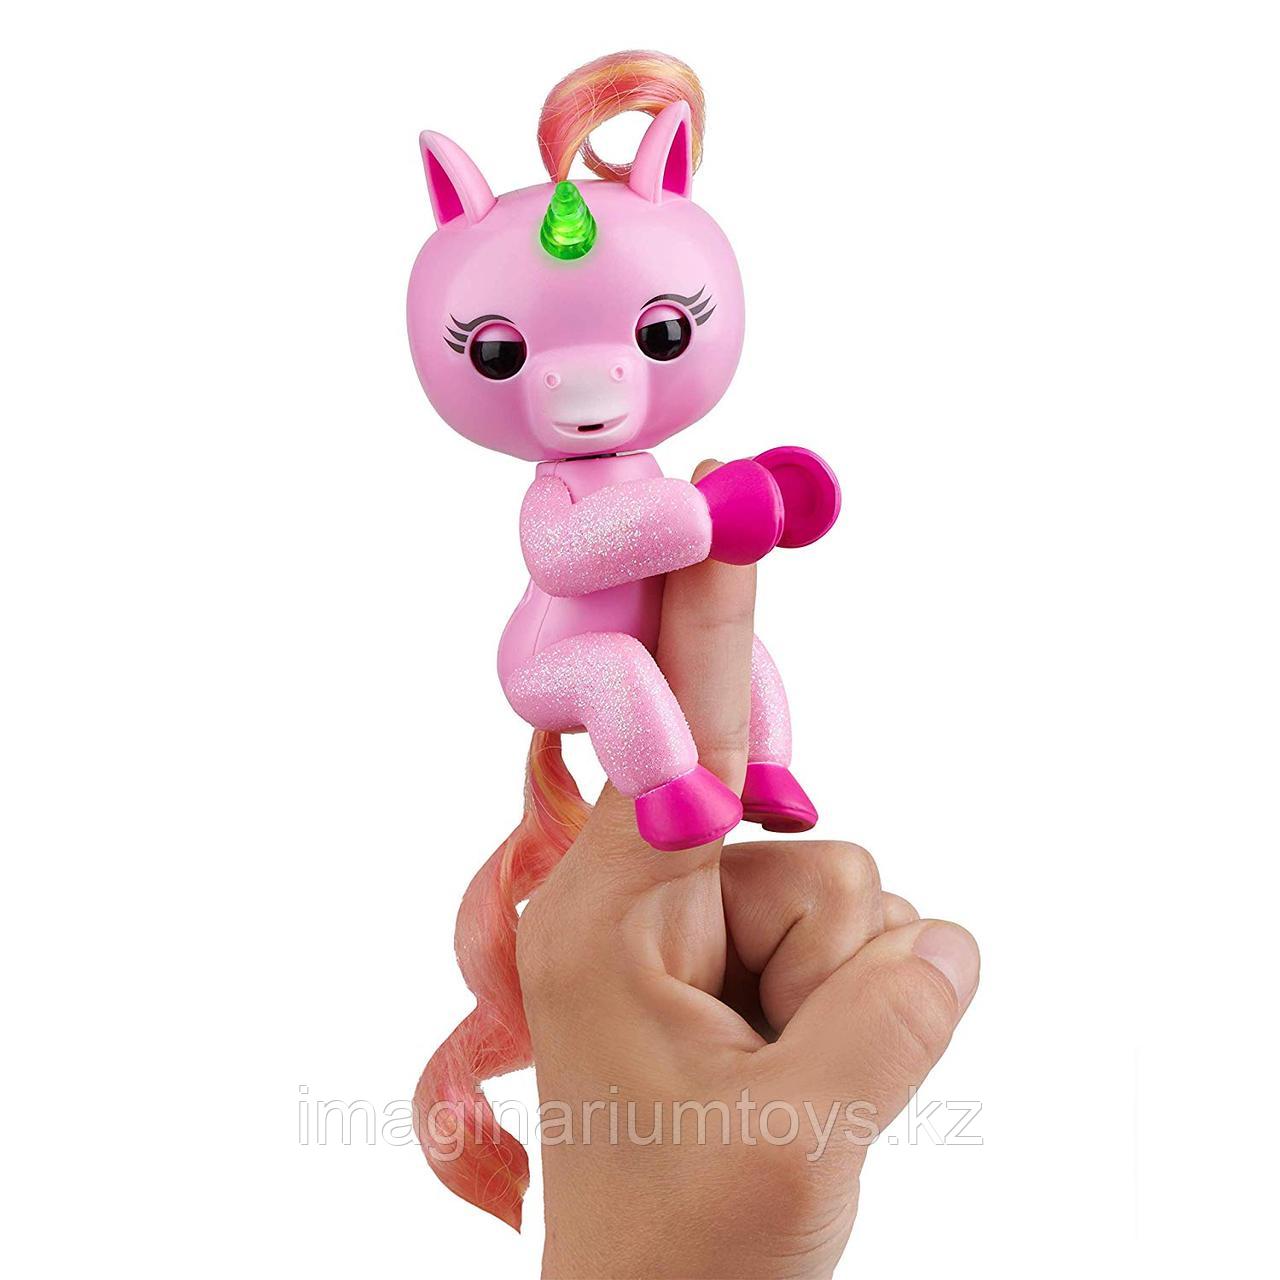 Fingerlings единорог розовый интерактивная игрушка